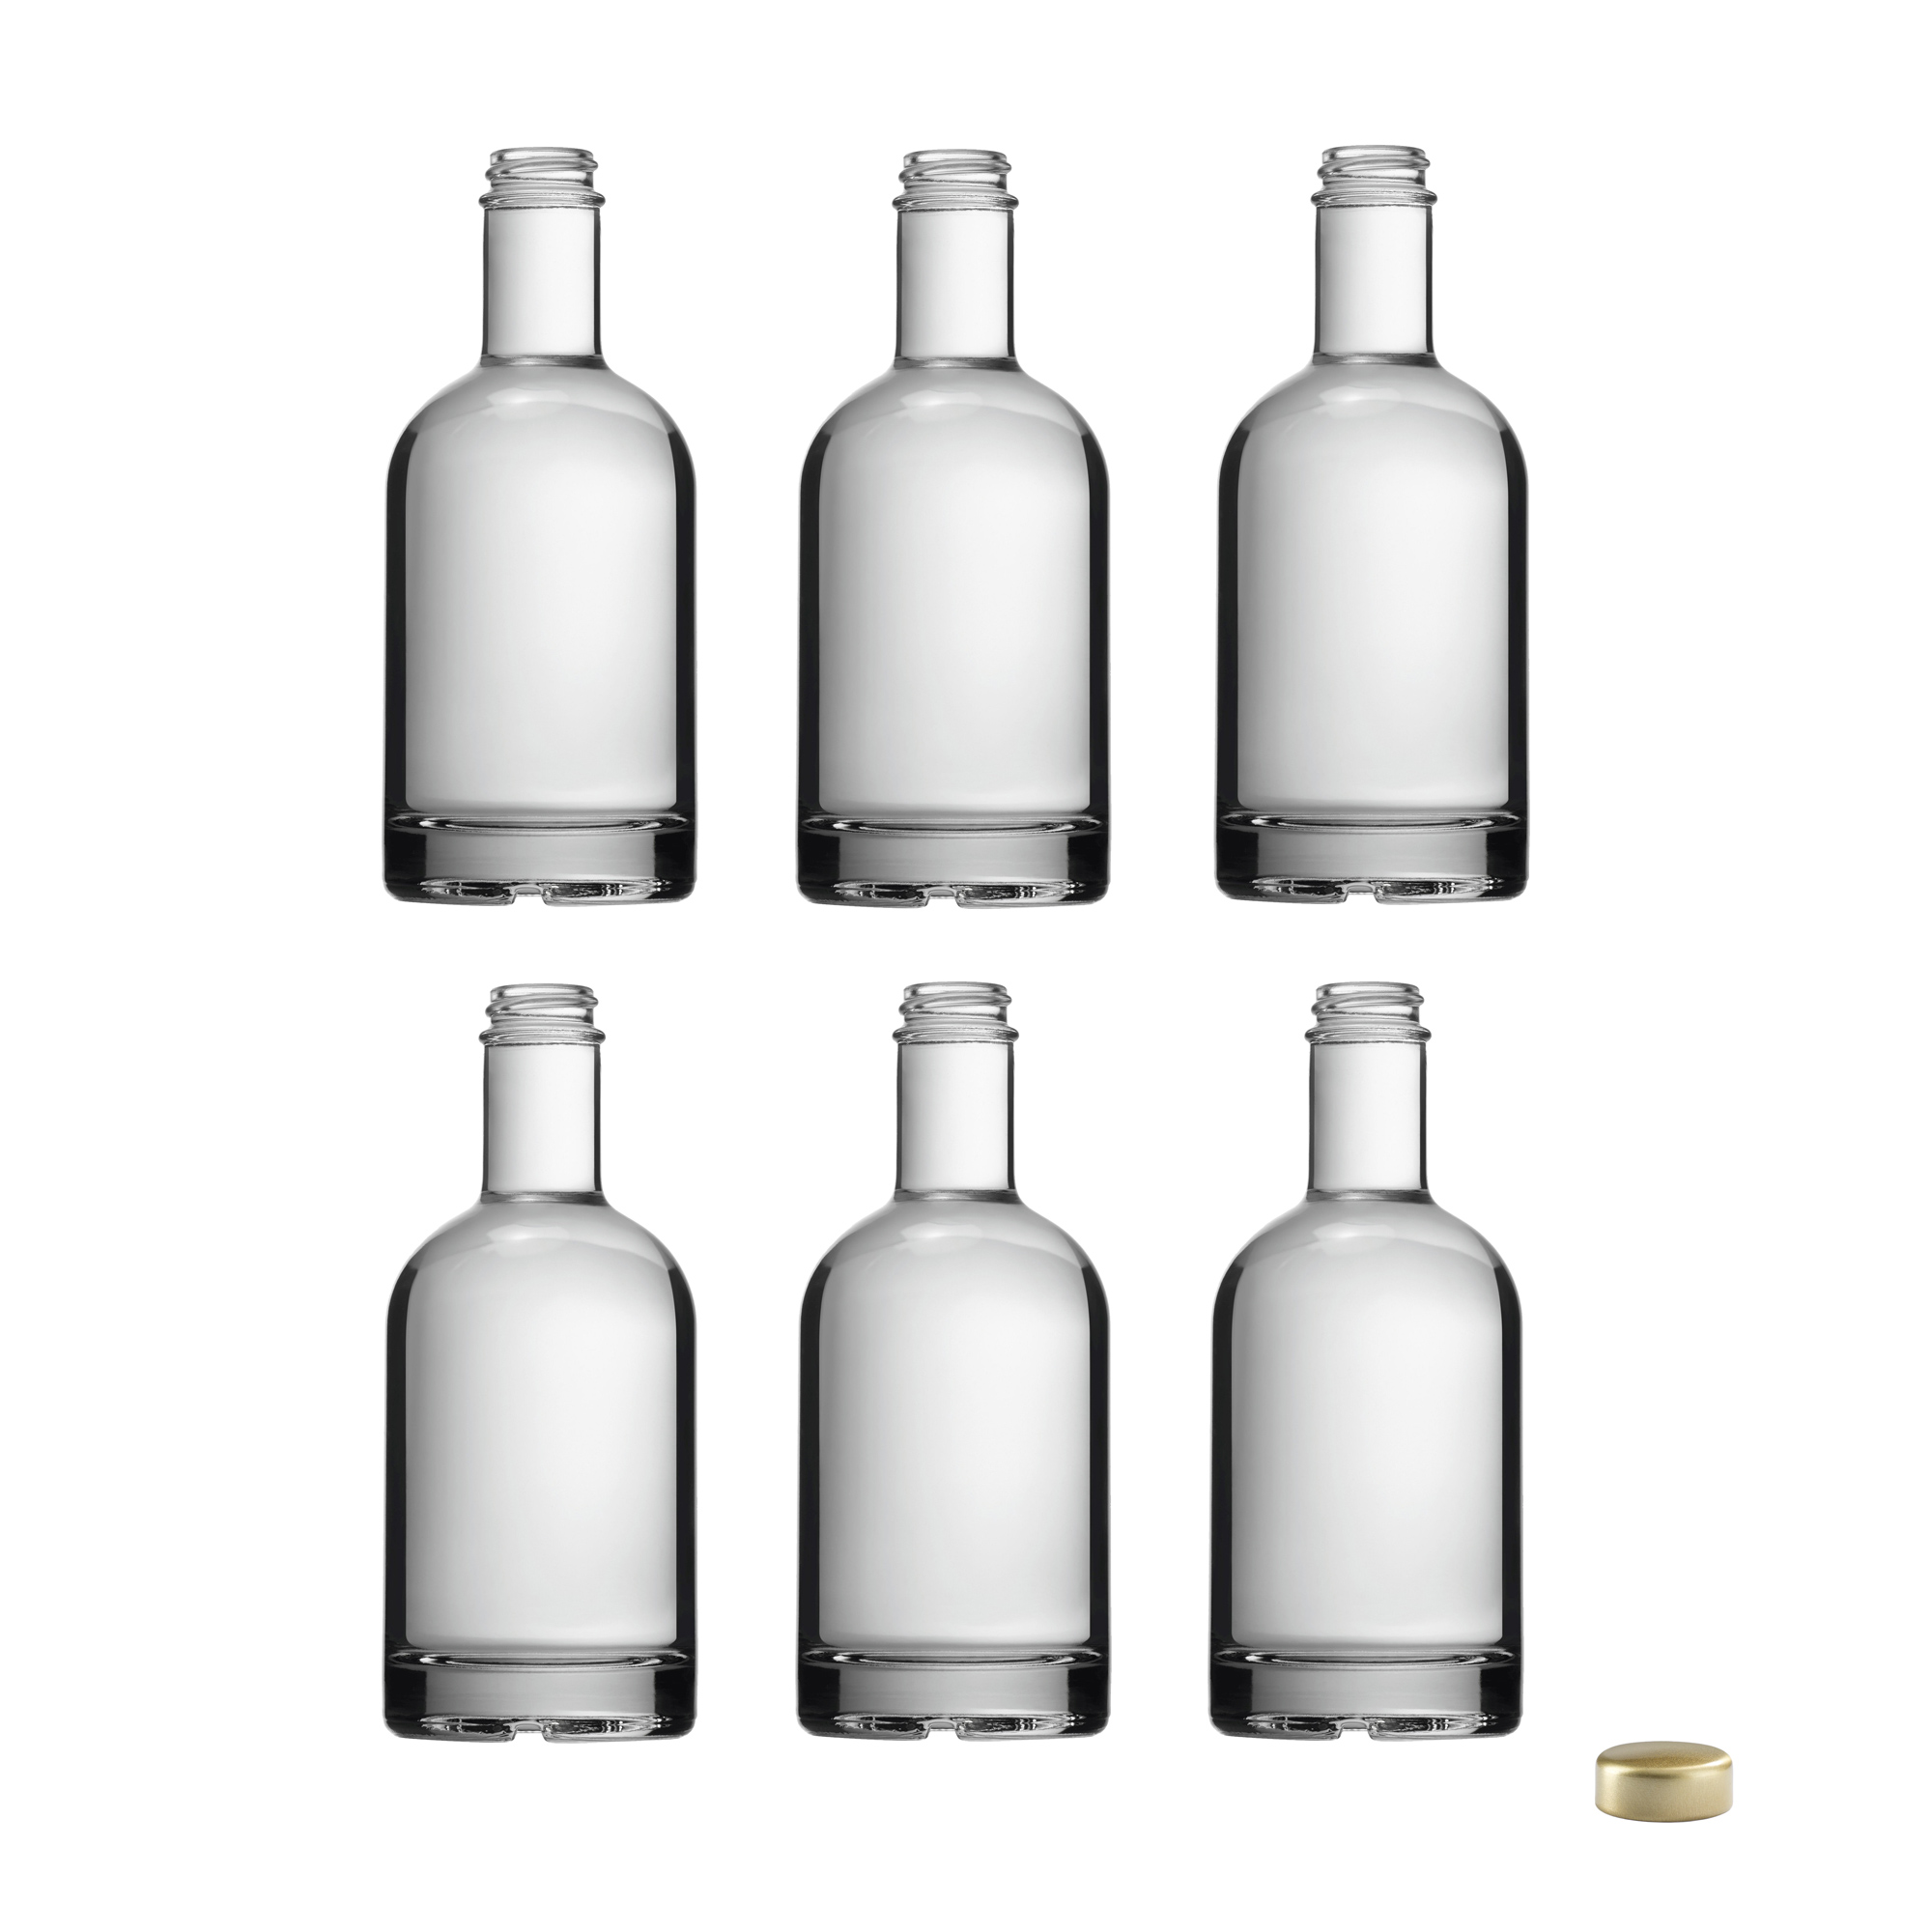 6x Glasflasche 350 ml mit Schraubverschluss zum Befüllen (Likörflasche, Schnapsflasche)